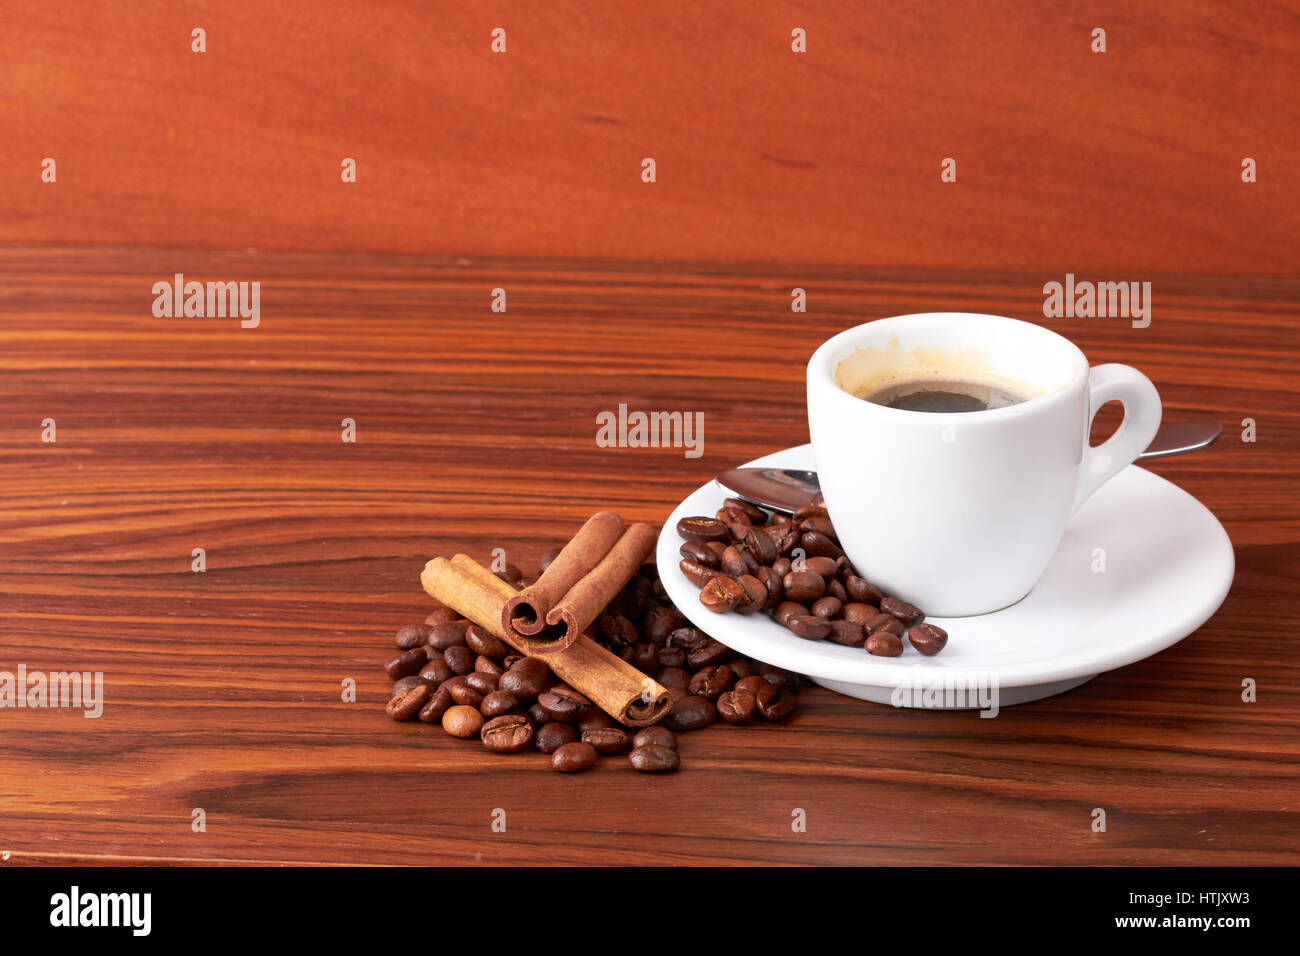 Tasse de café avec des grains de café et des bâtons de cannelle Banque D'Images